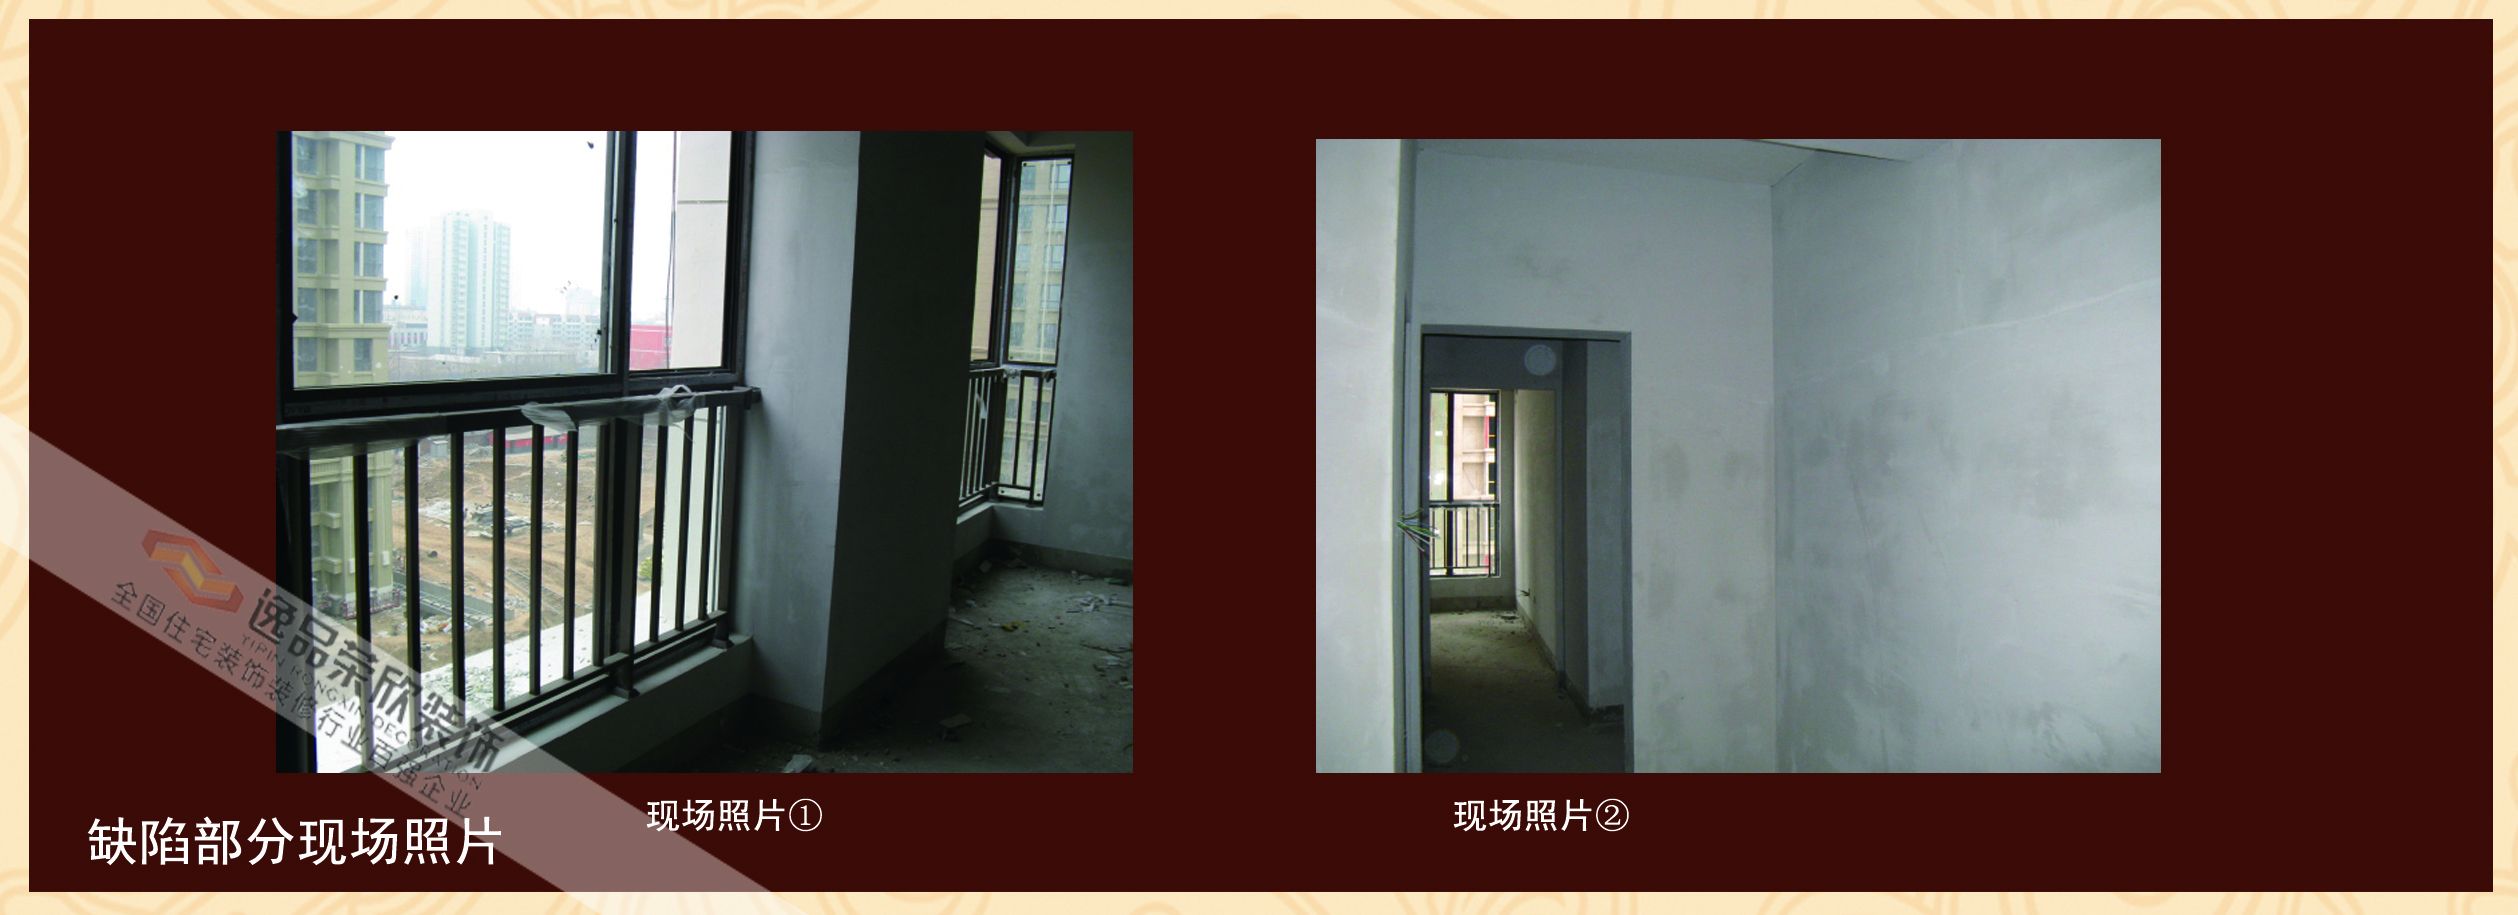 远见-新中式-四居室